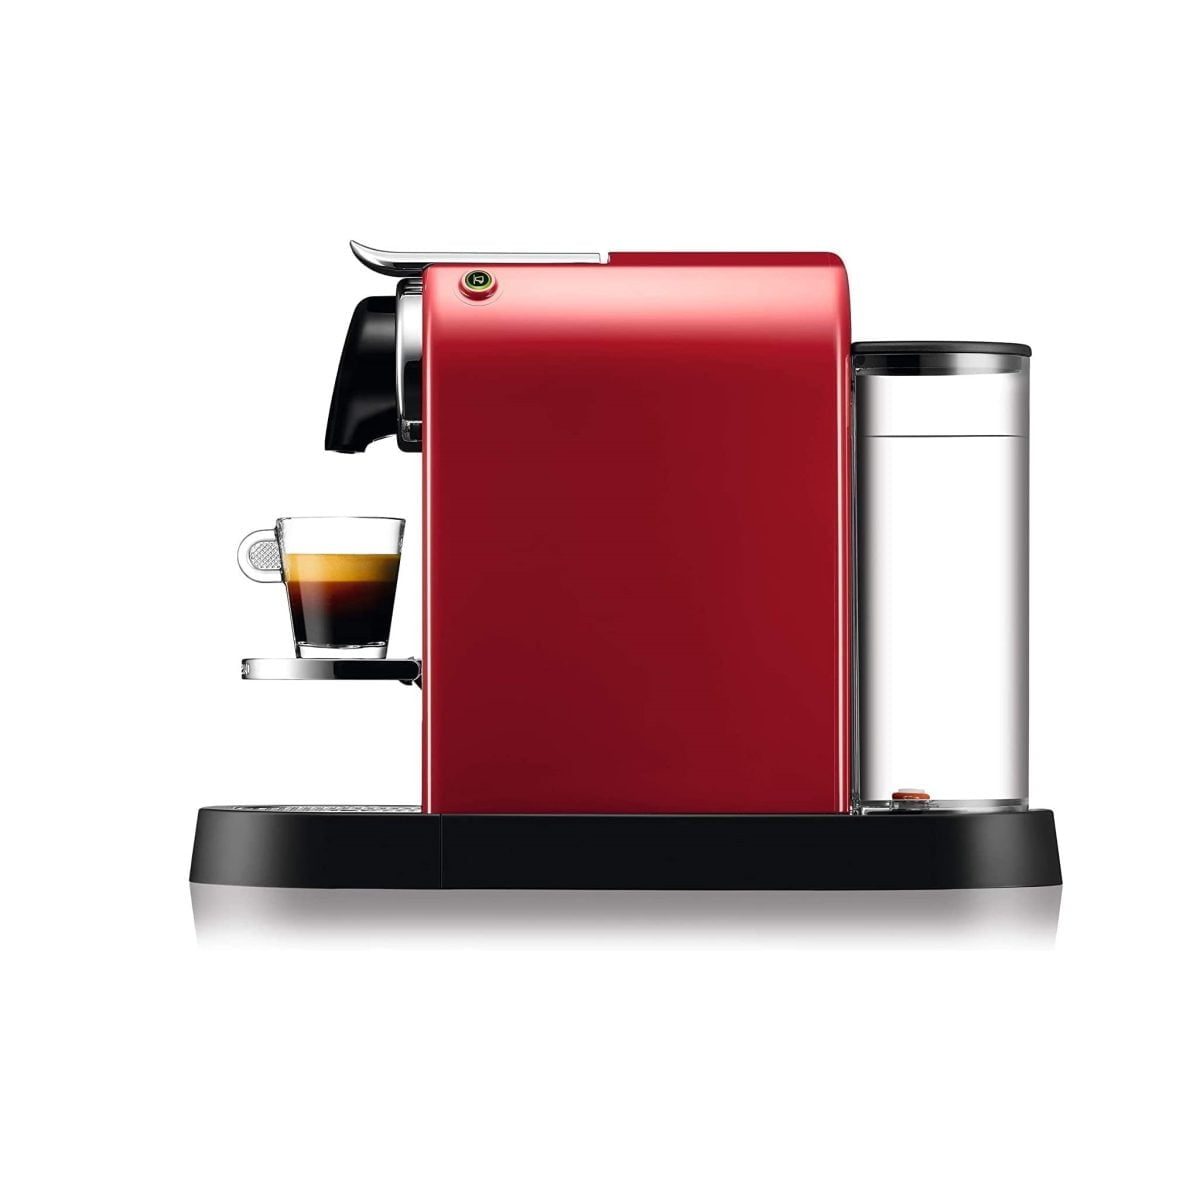 Nespresso Krups Citiz Coffee Machine - Red Xn7415